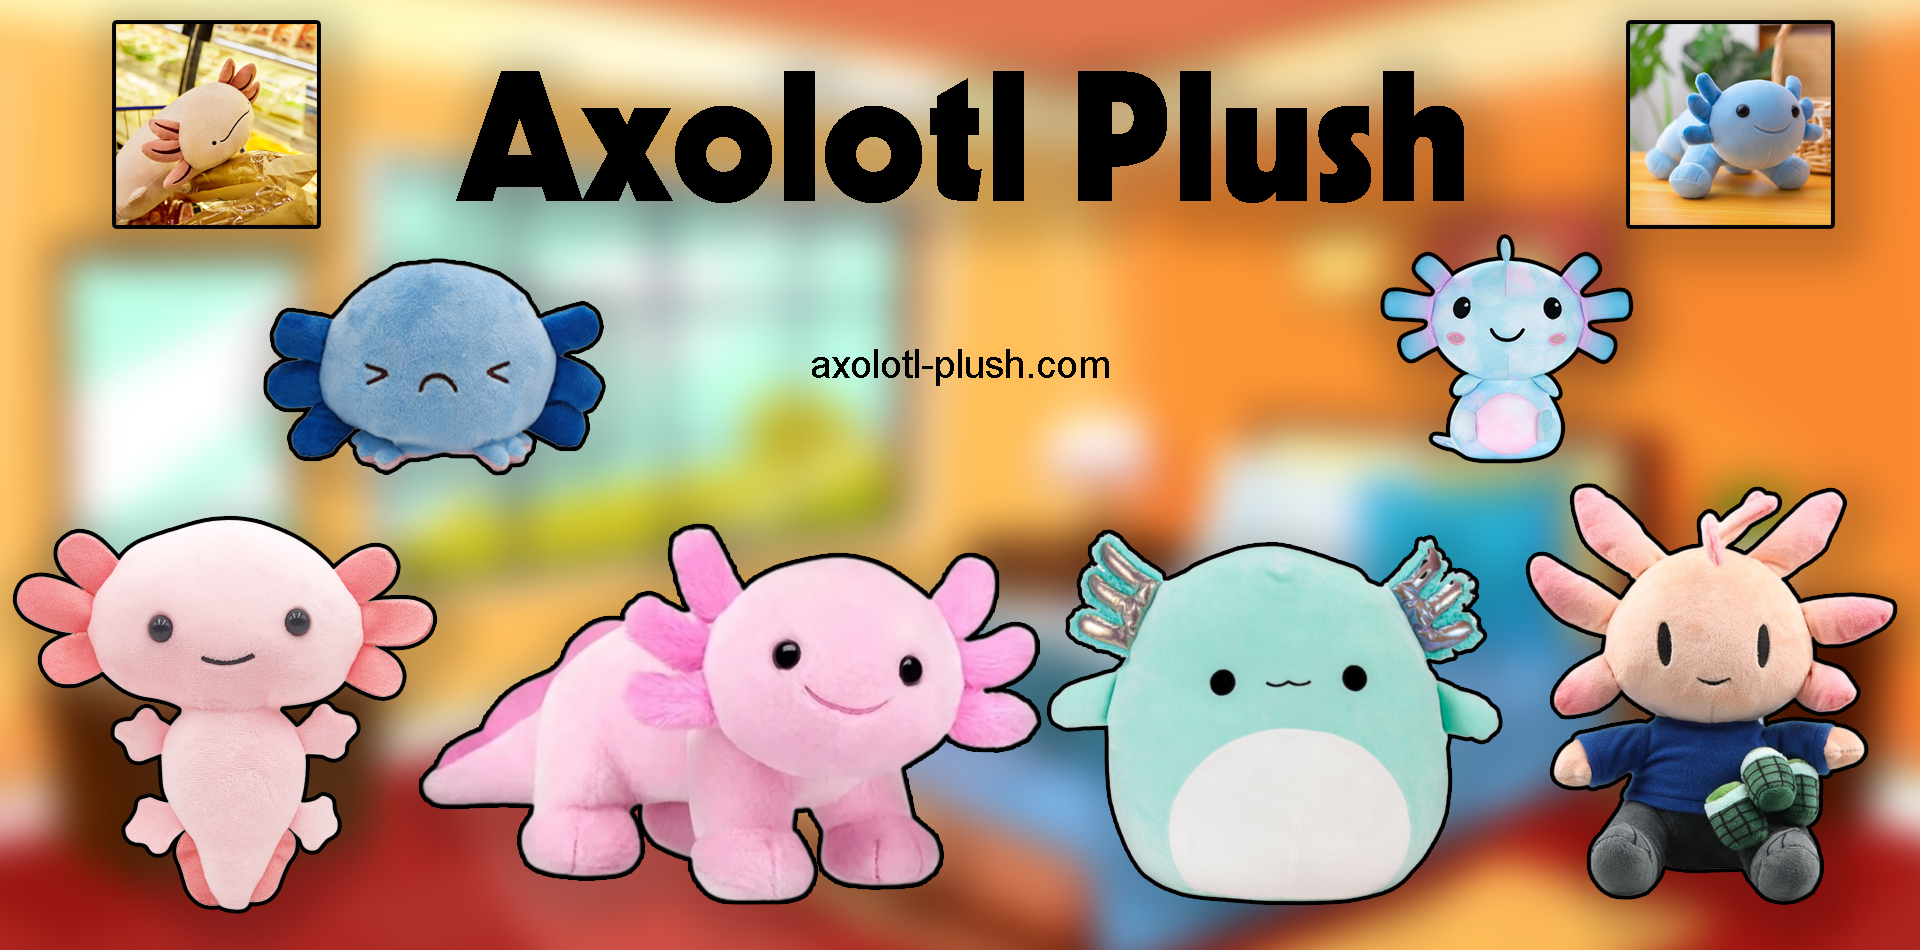 axolotl-plush-banner